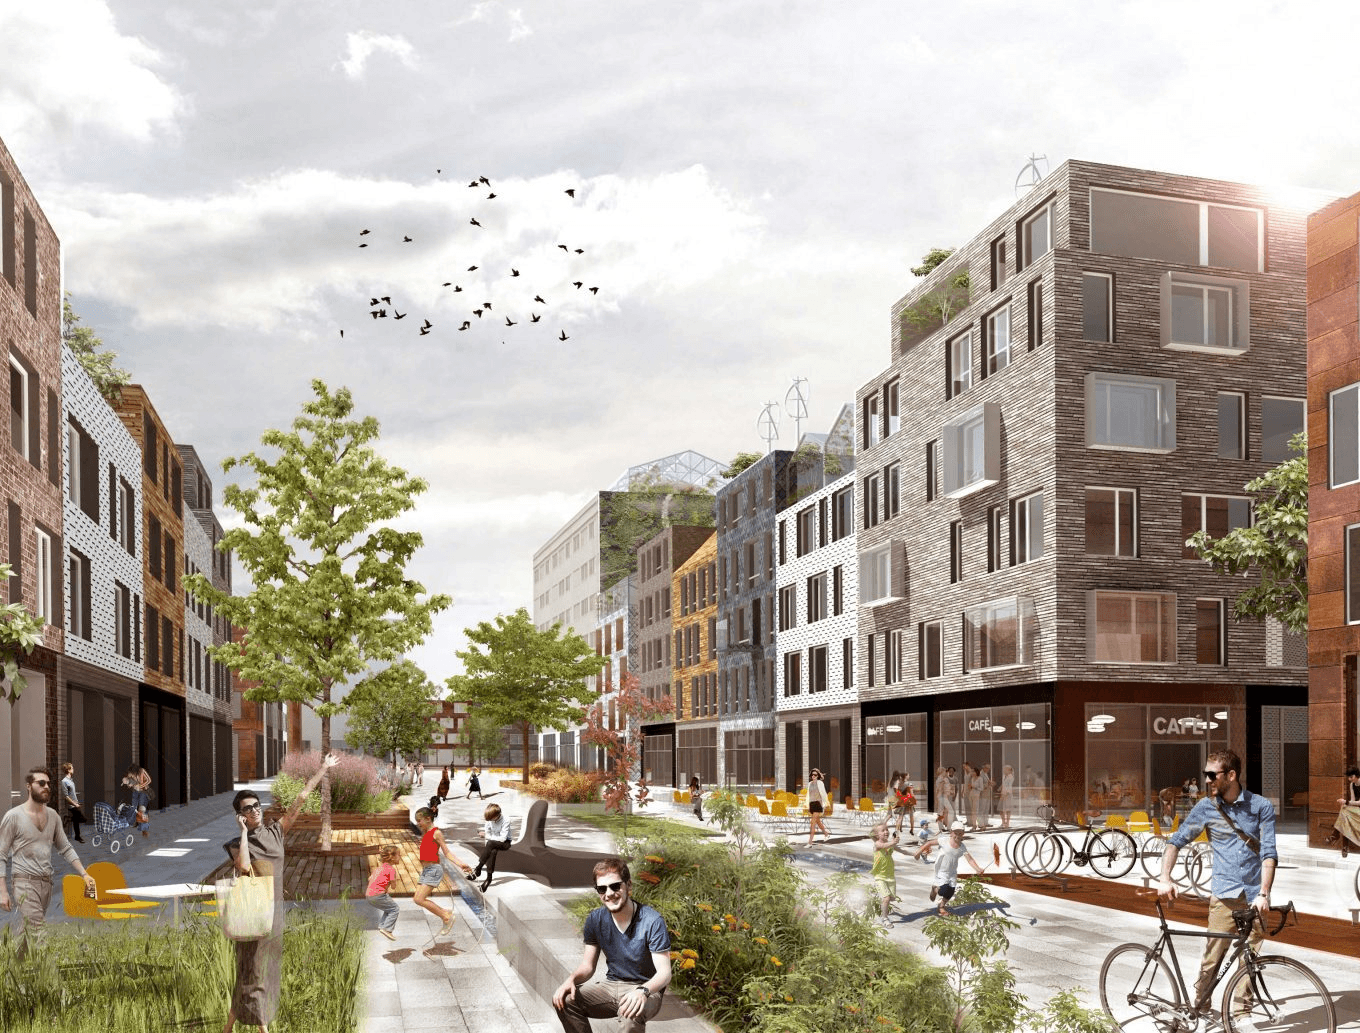 Udržitelná města – místa, kde lidé žijí spolu